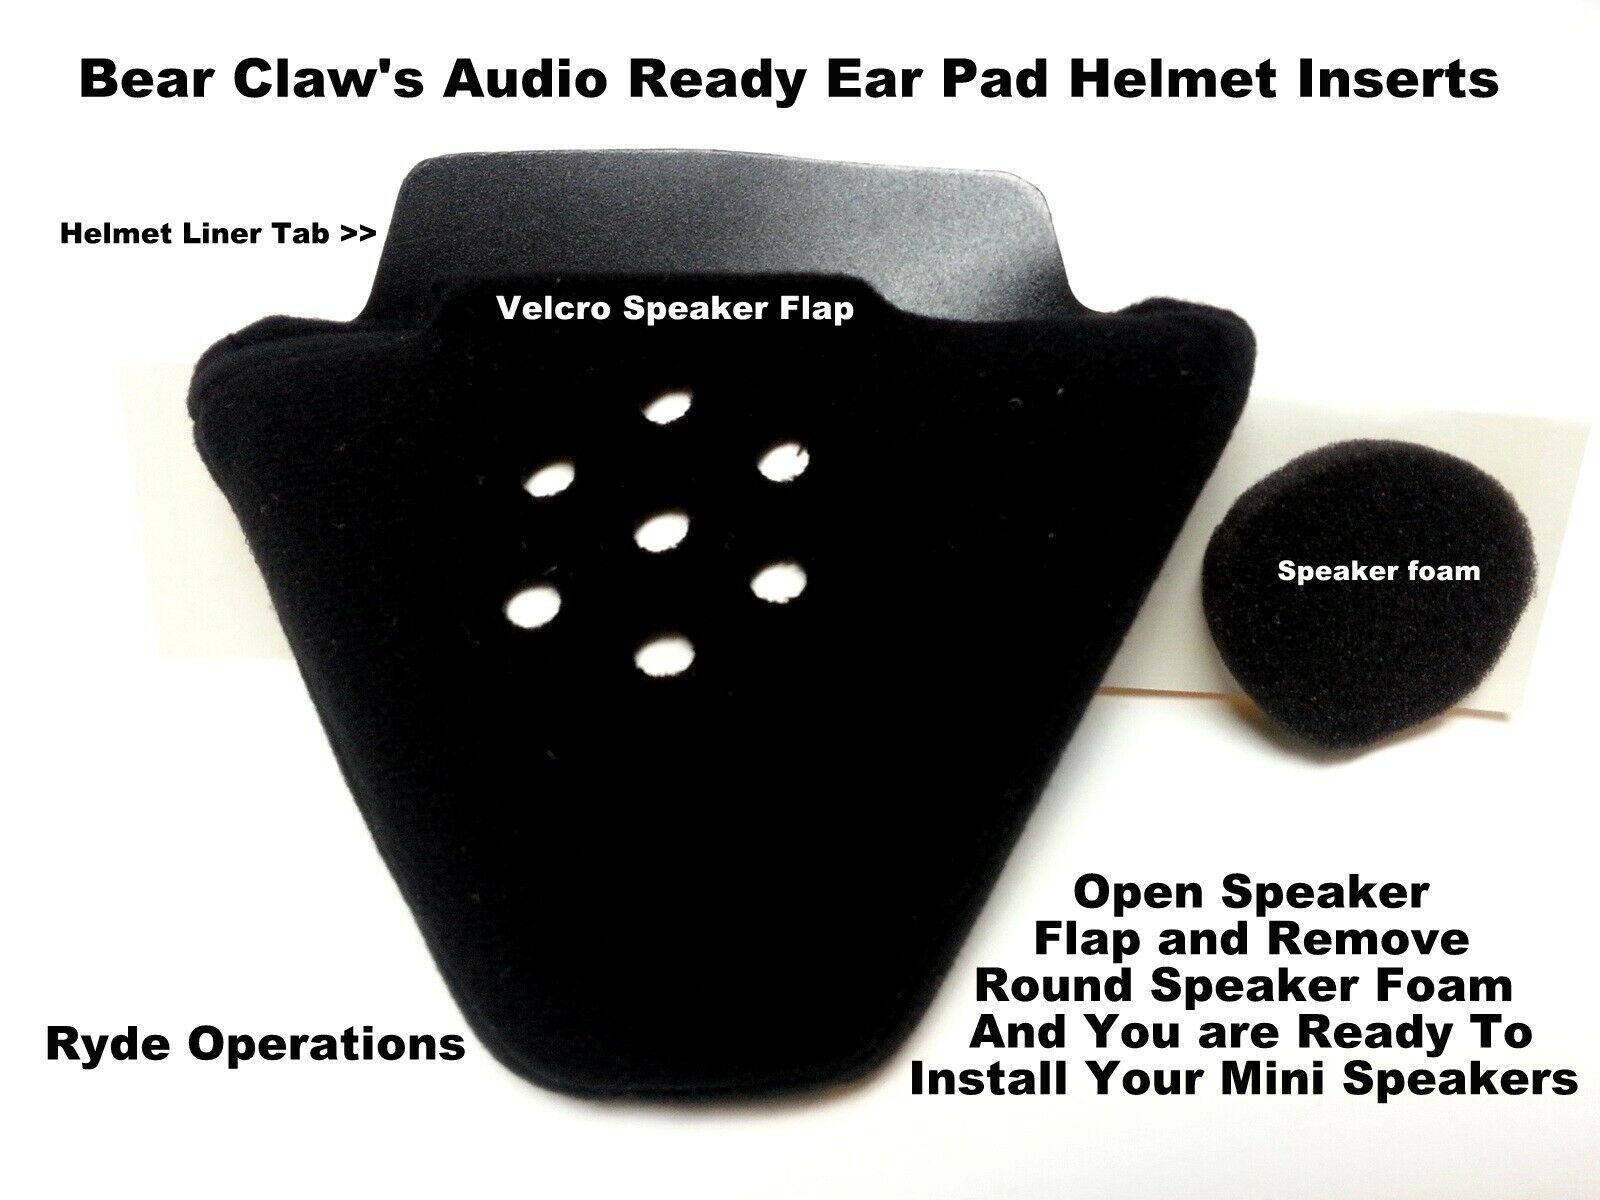 Bear Claw Audio Ready Ear Pads